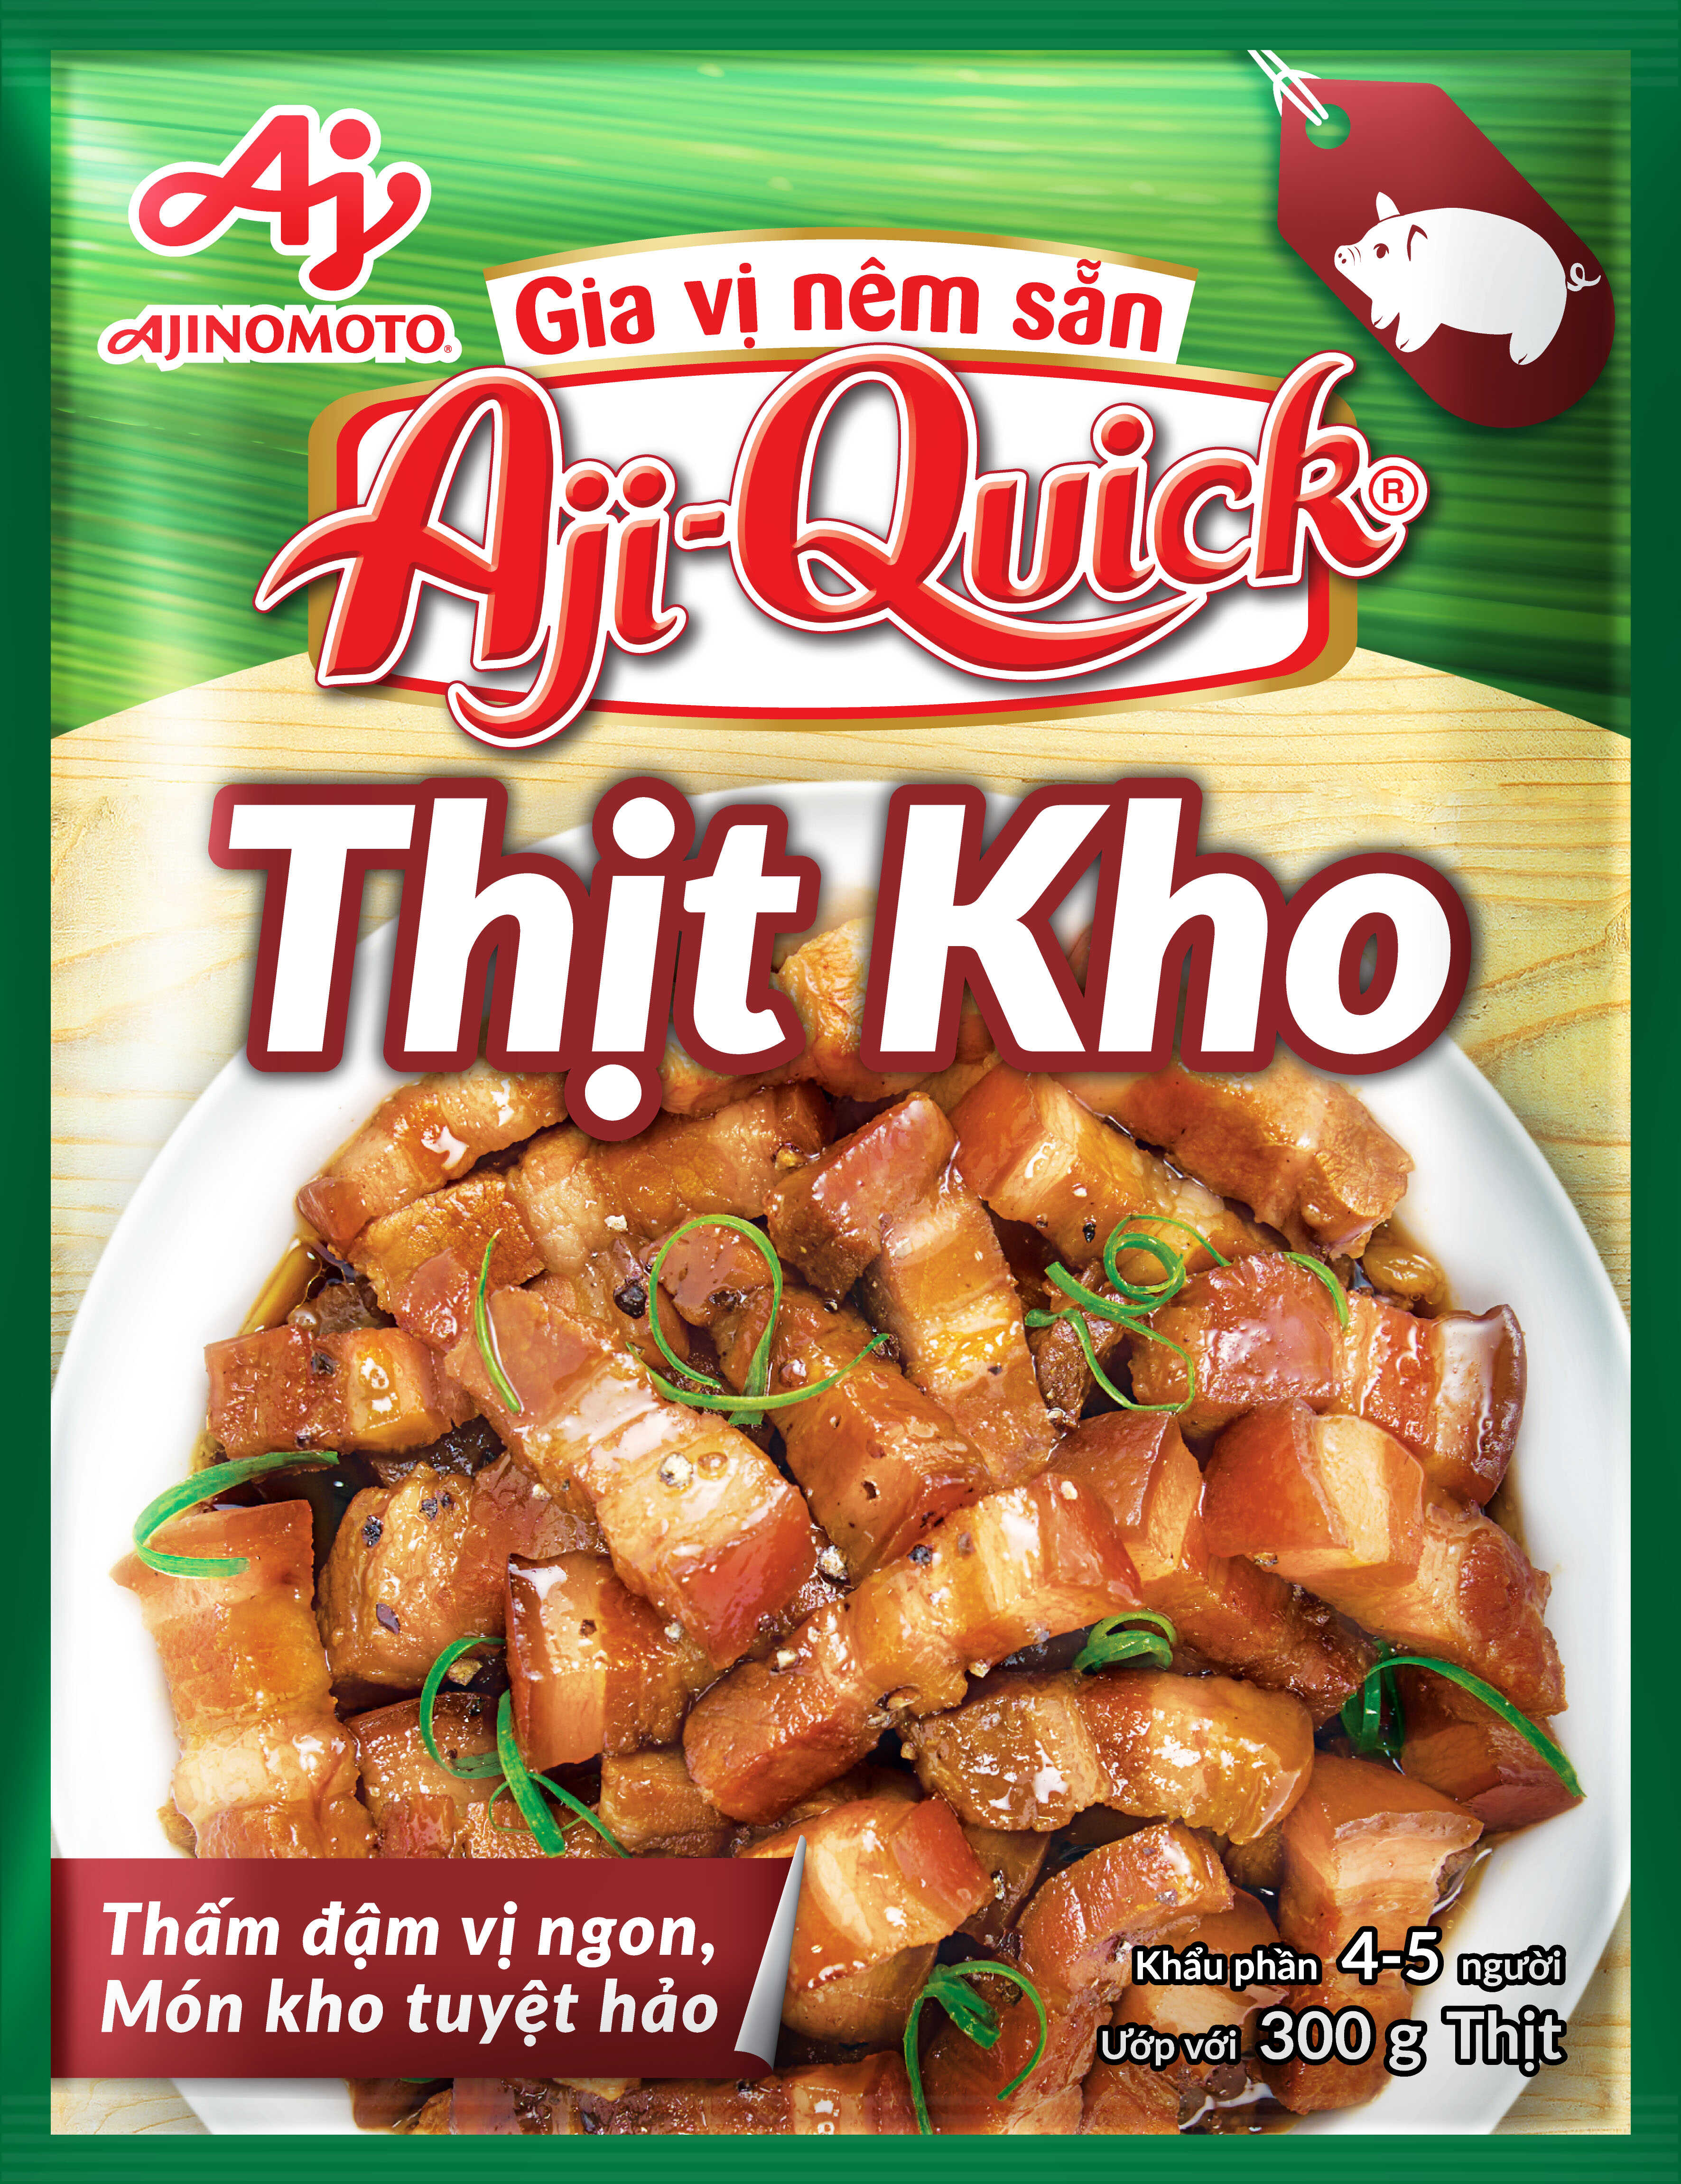 Combo 10 Gói Gia Vị Nêm Sẵn Aji-Quick® Thịt Kho 31g/Gói